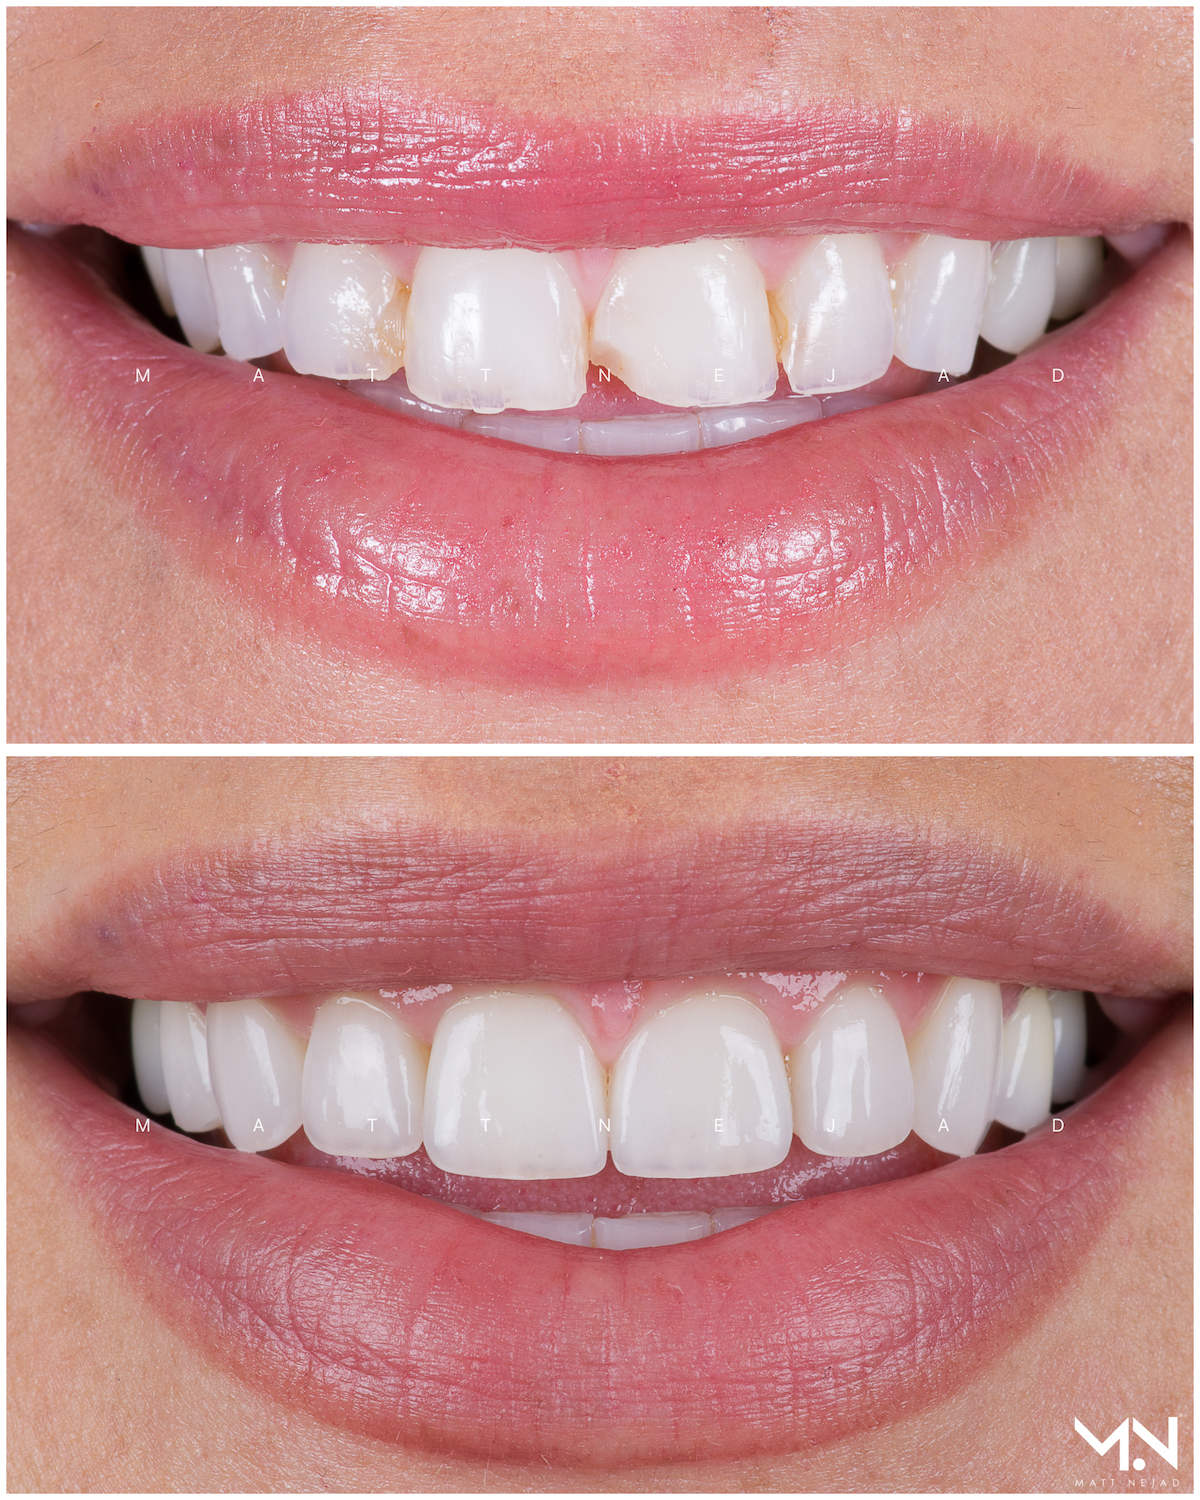 Closeup before & after smile of 10 veneers